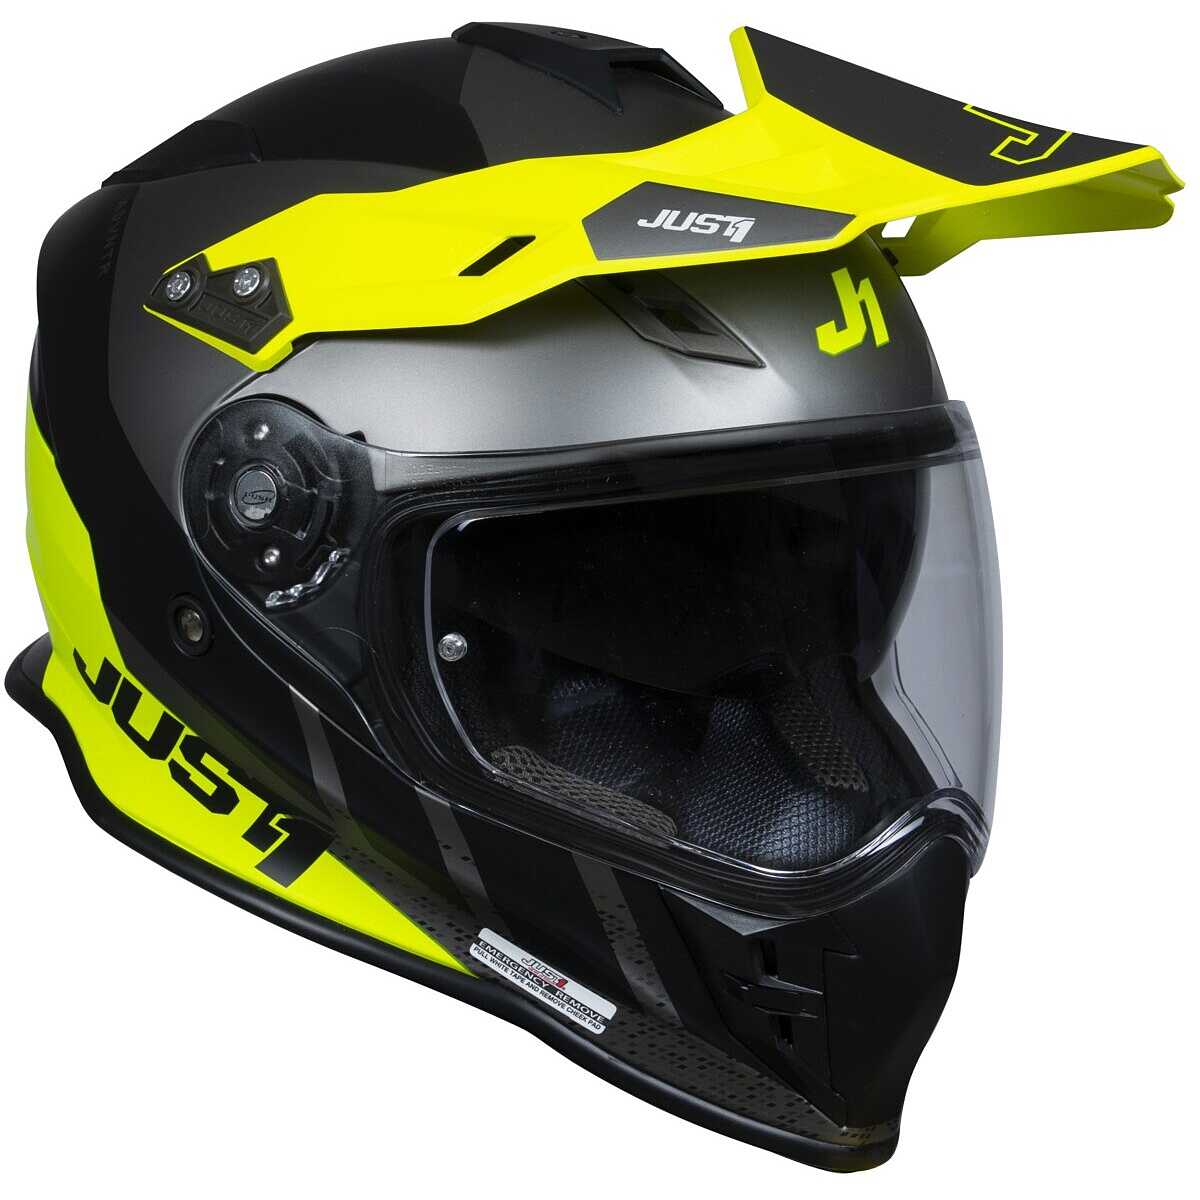 CGM Daytona Mono helmet – Start Up